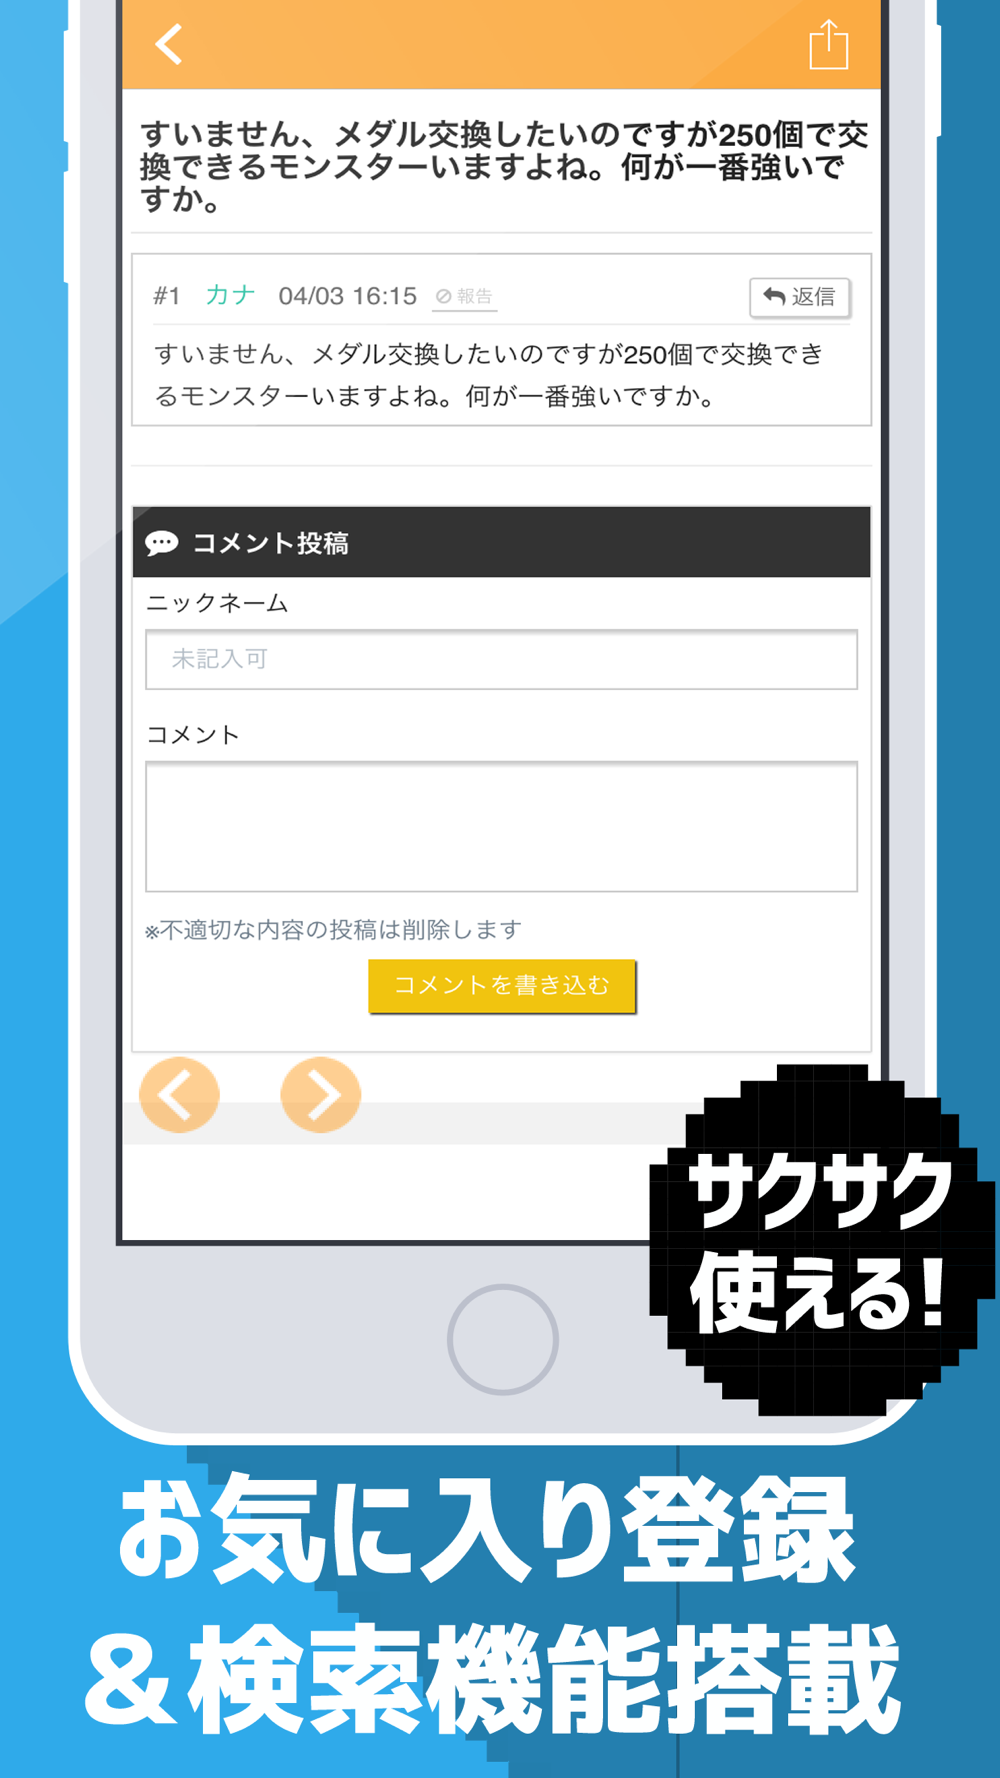 Dqmsl攻略掲示板アプリ For ドラゴンクエスト モンスターズ スーパーライト ドラクエモンスターズ Free Download App For Iphone Steprimo Com